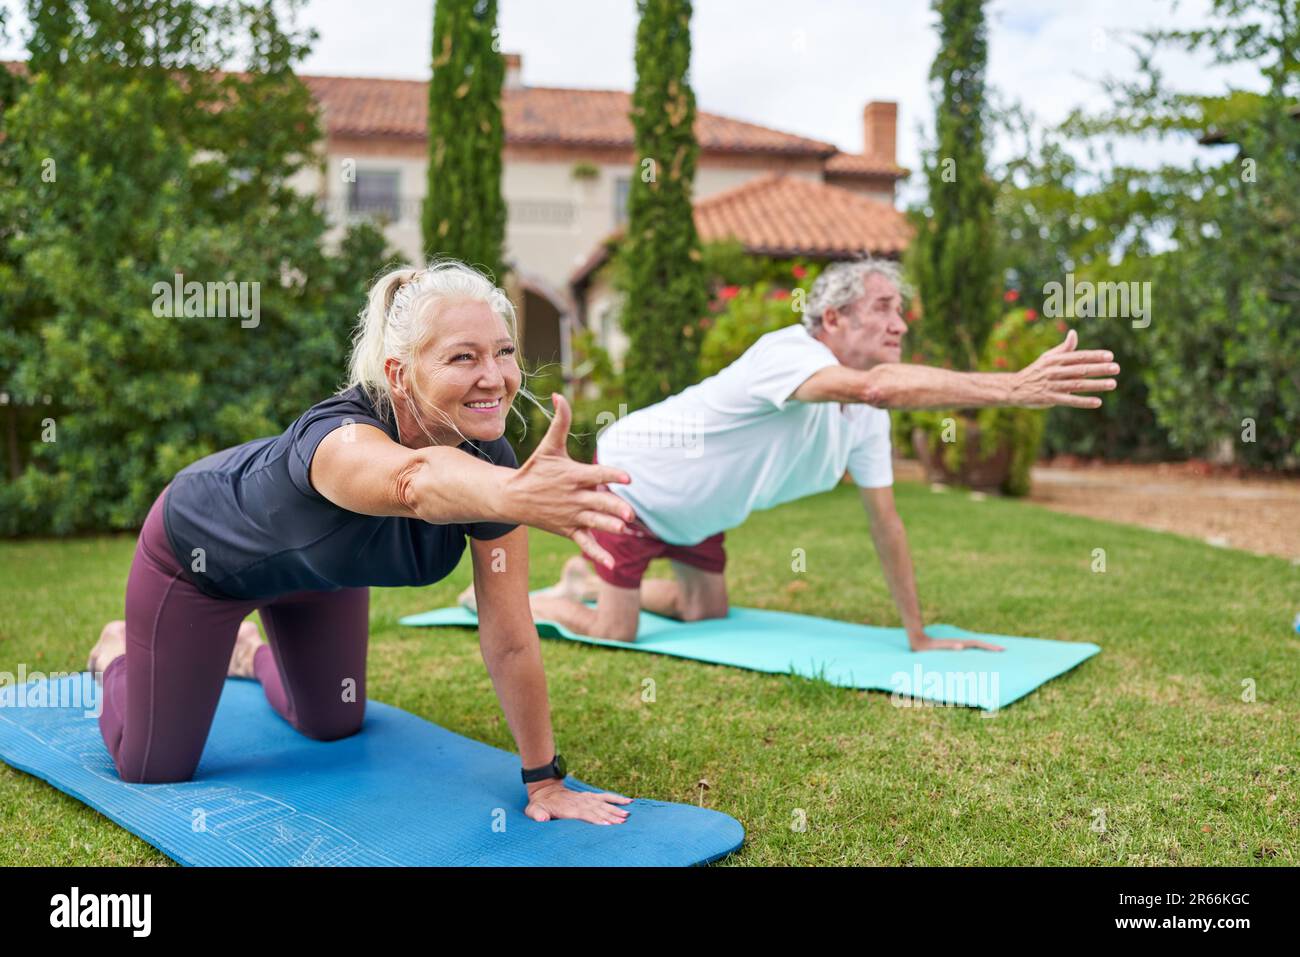 Happy senior couple practicing yoga in villa garden grass Stock Photo